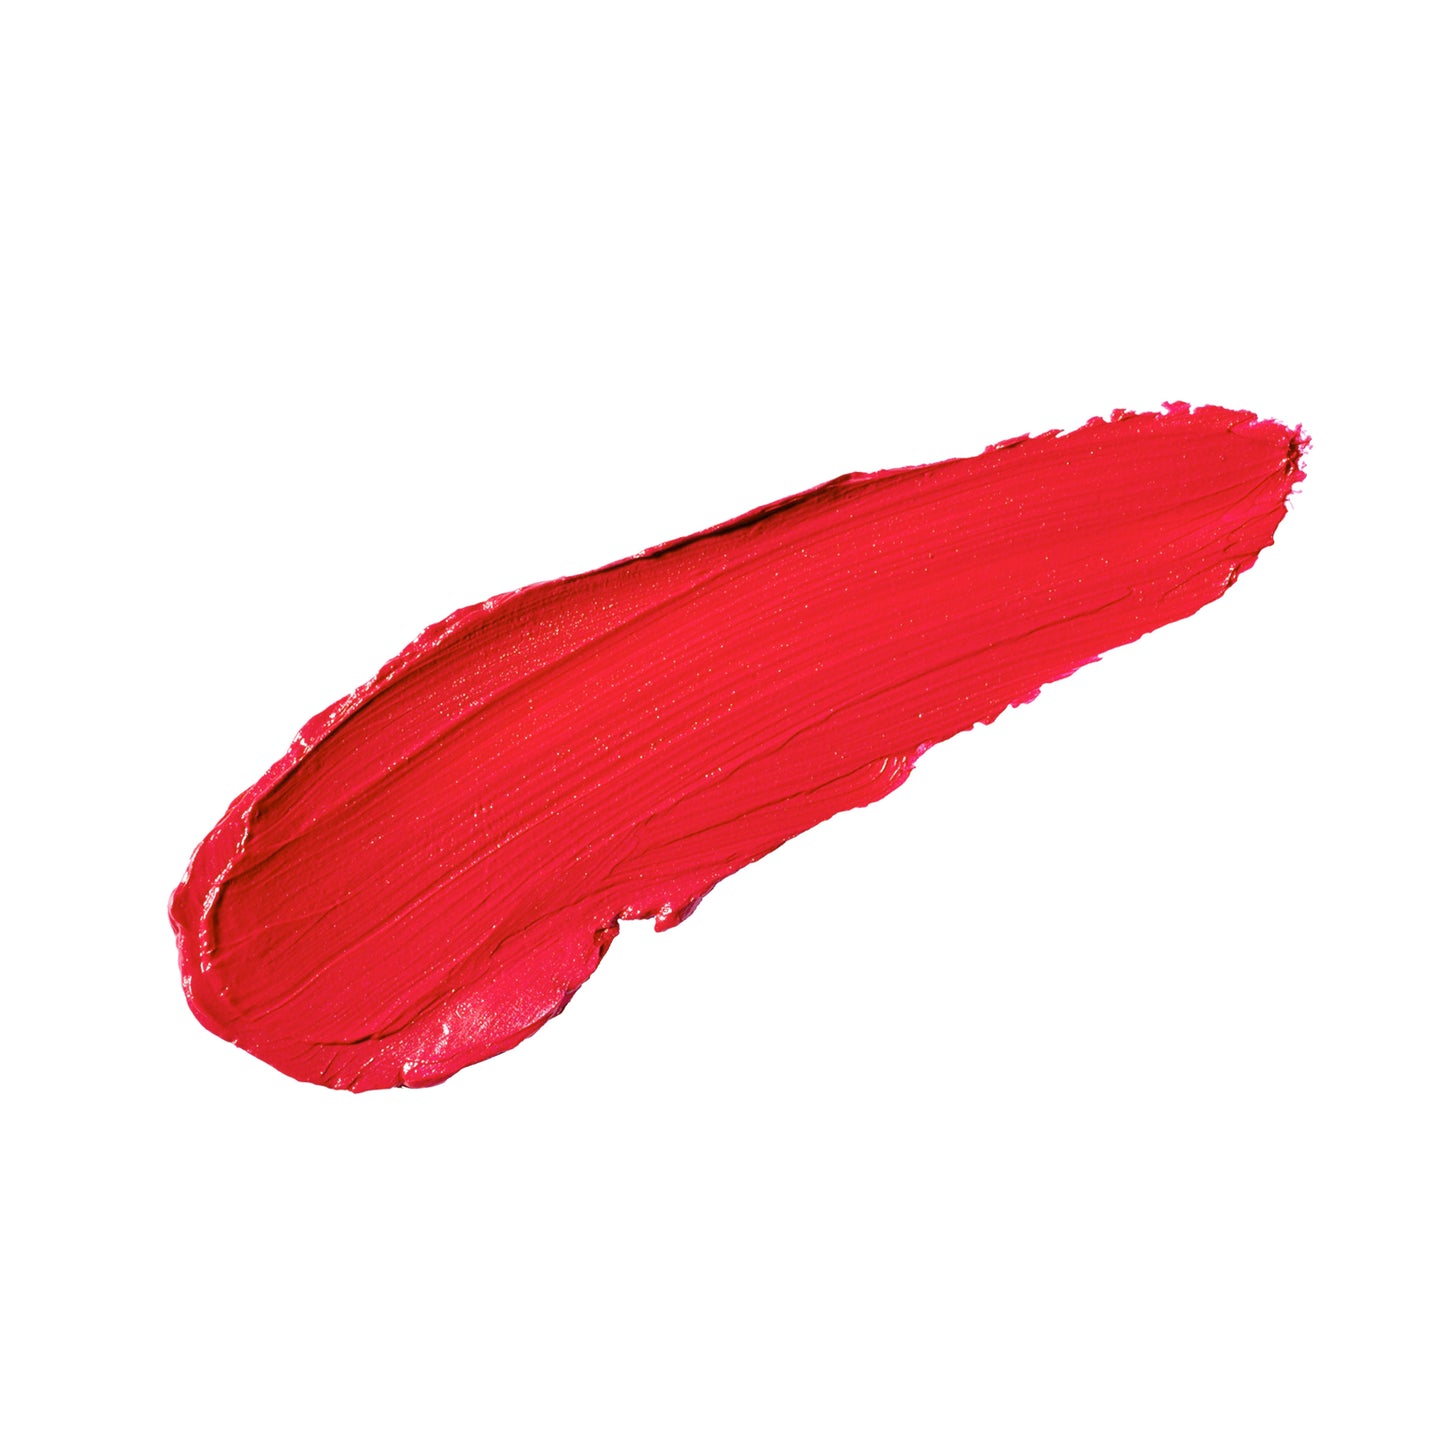 Stalno Crimson Matte Finish - The Long-lasting Liquid Lipstick And Lip Liner